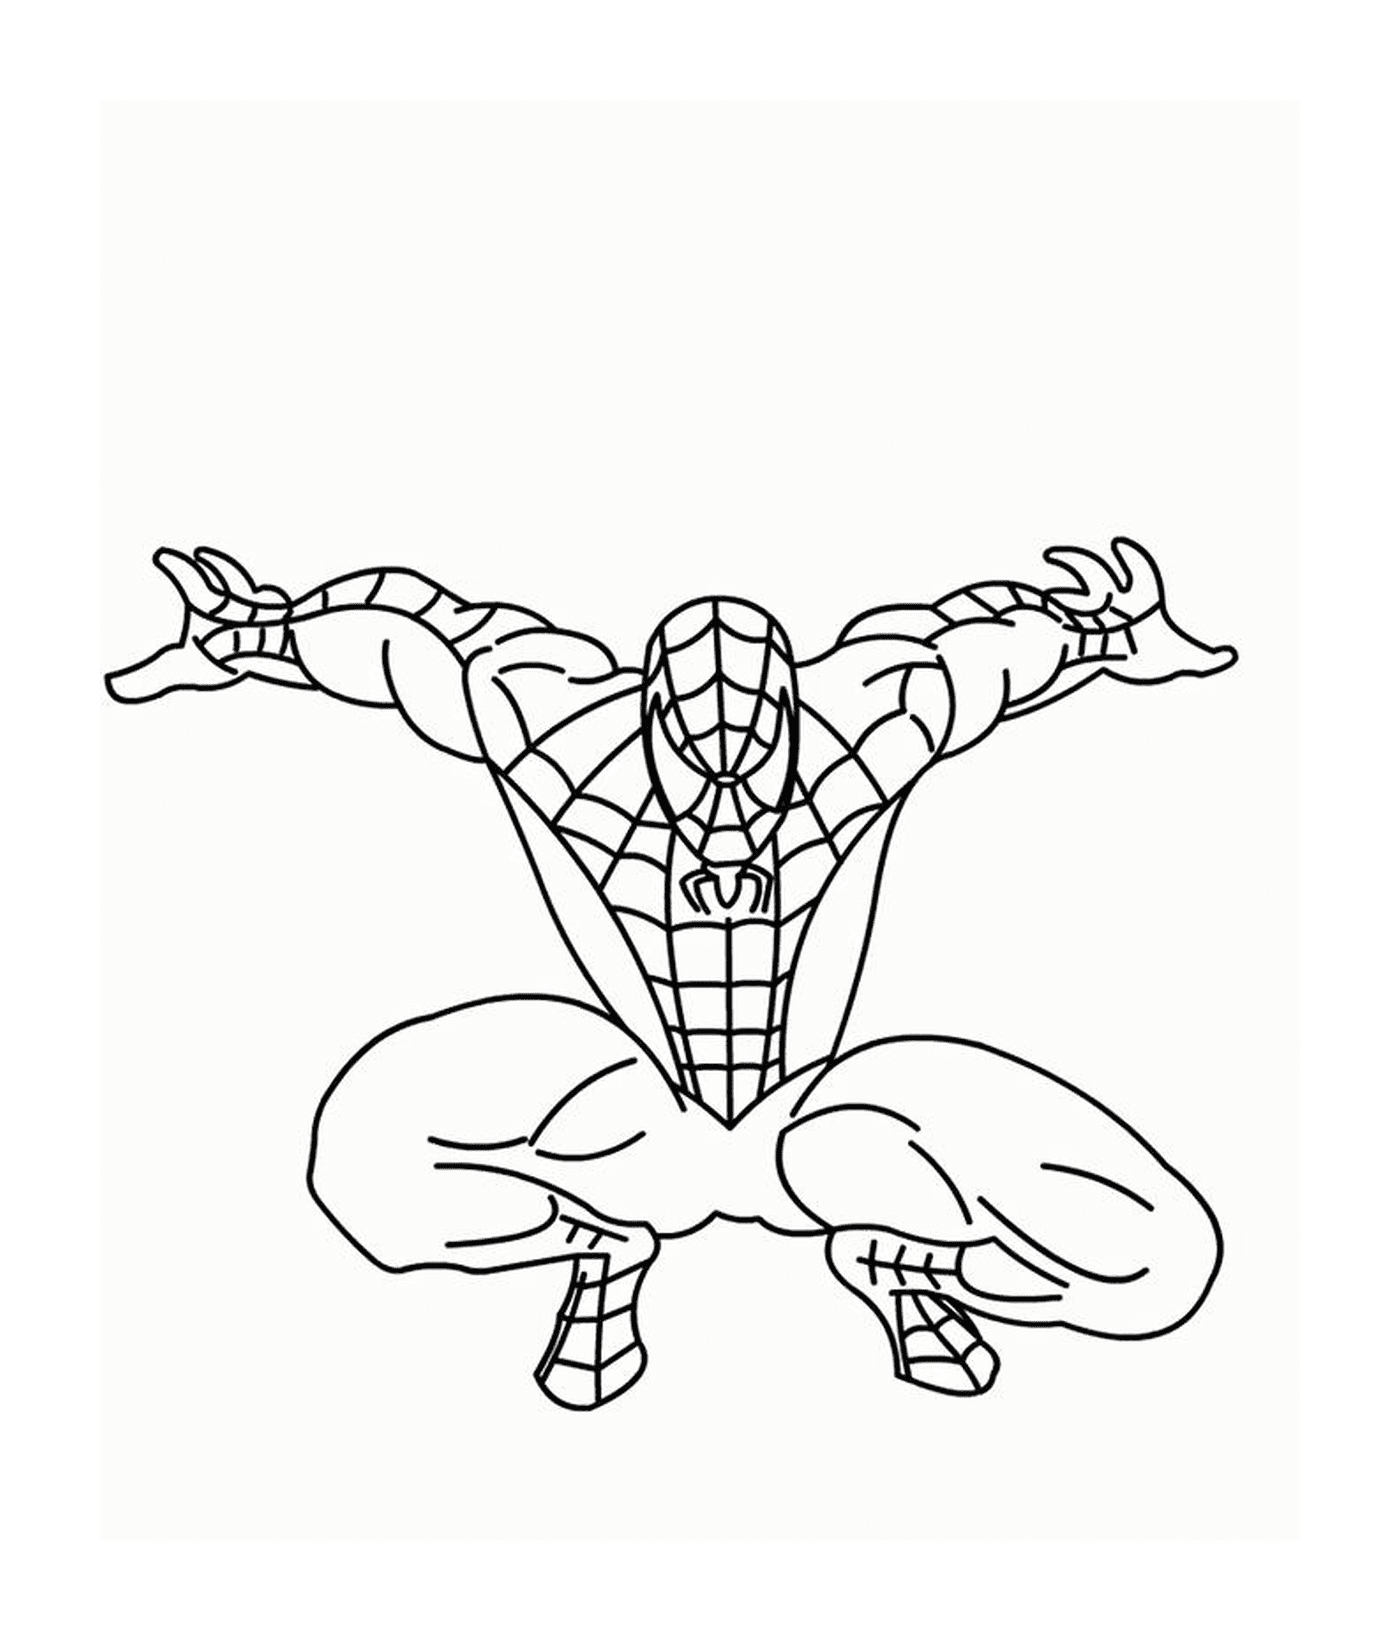  Человек-паук готов прыгнуть 